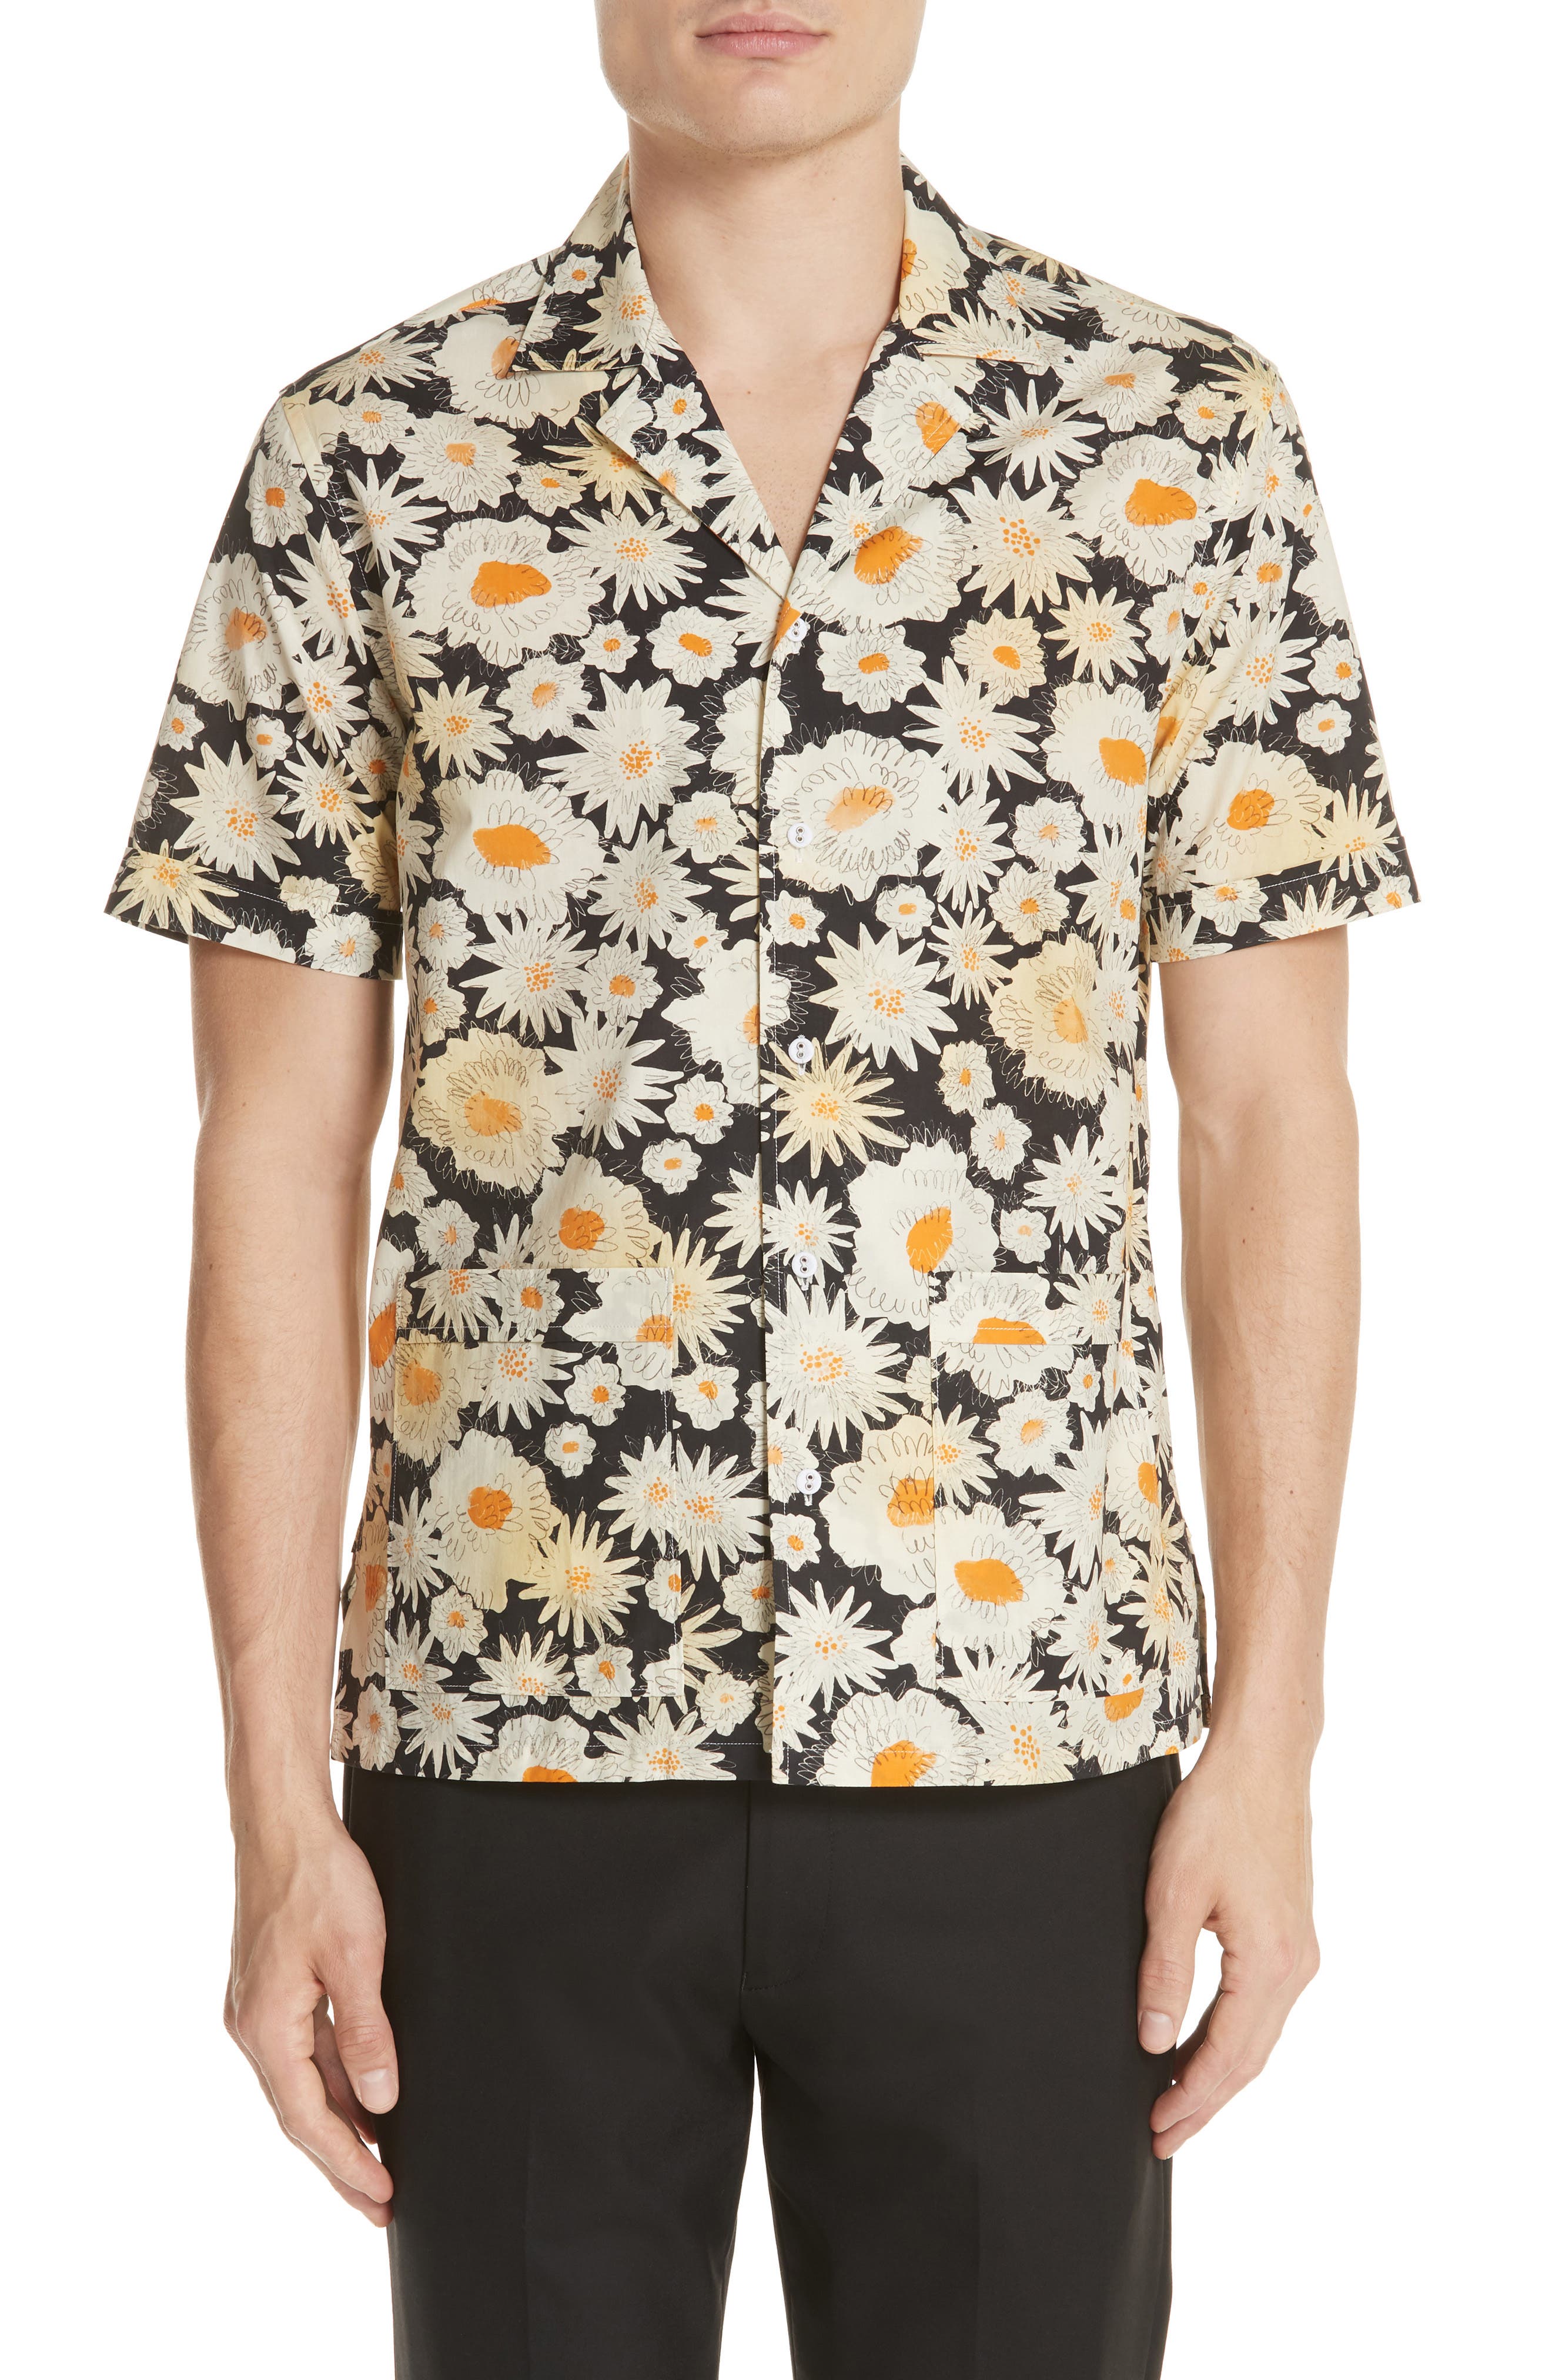 burberry hawaiian shirt